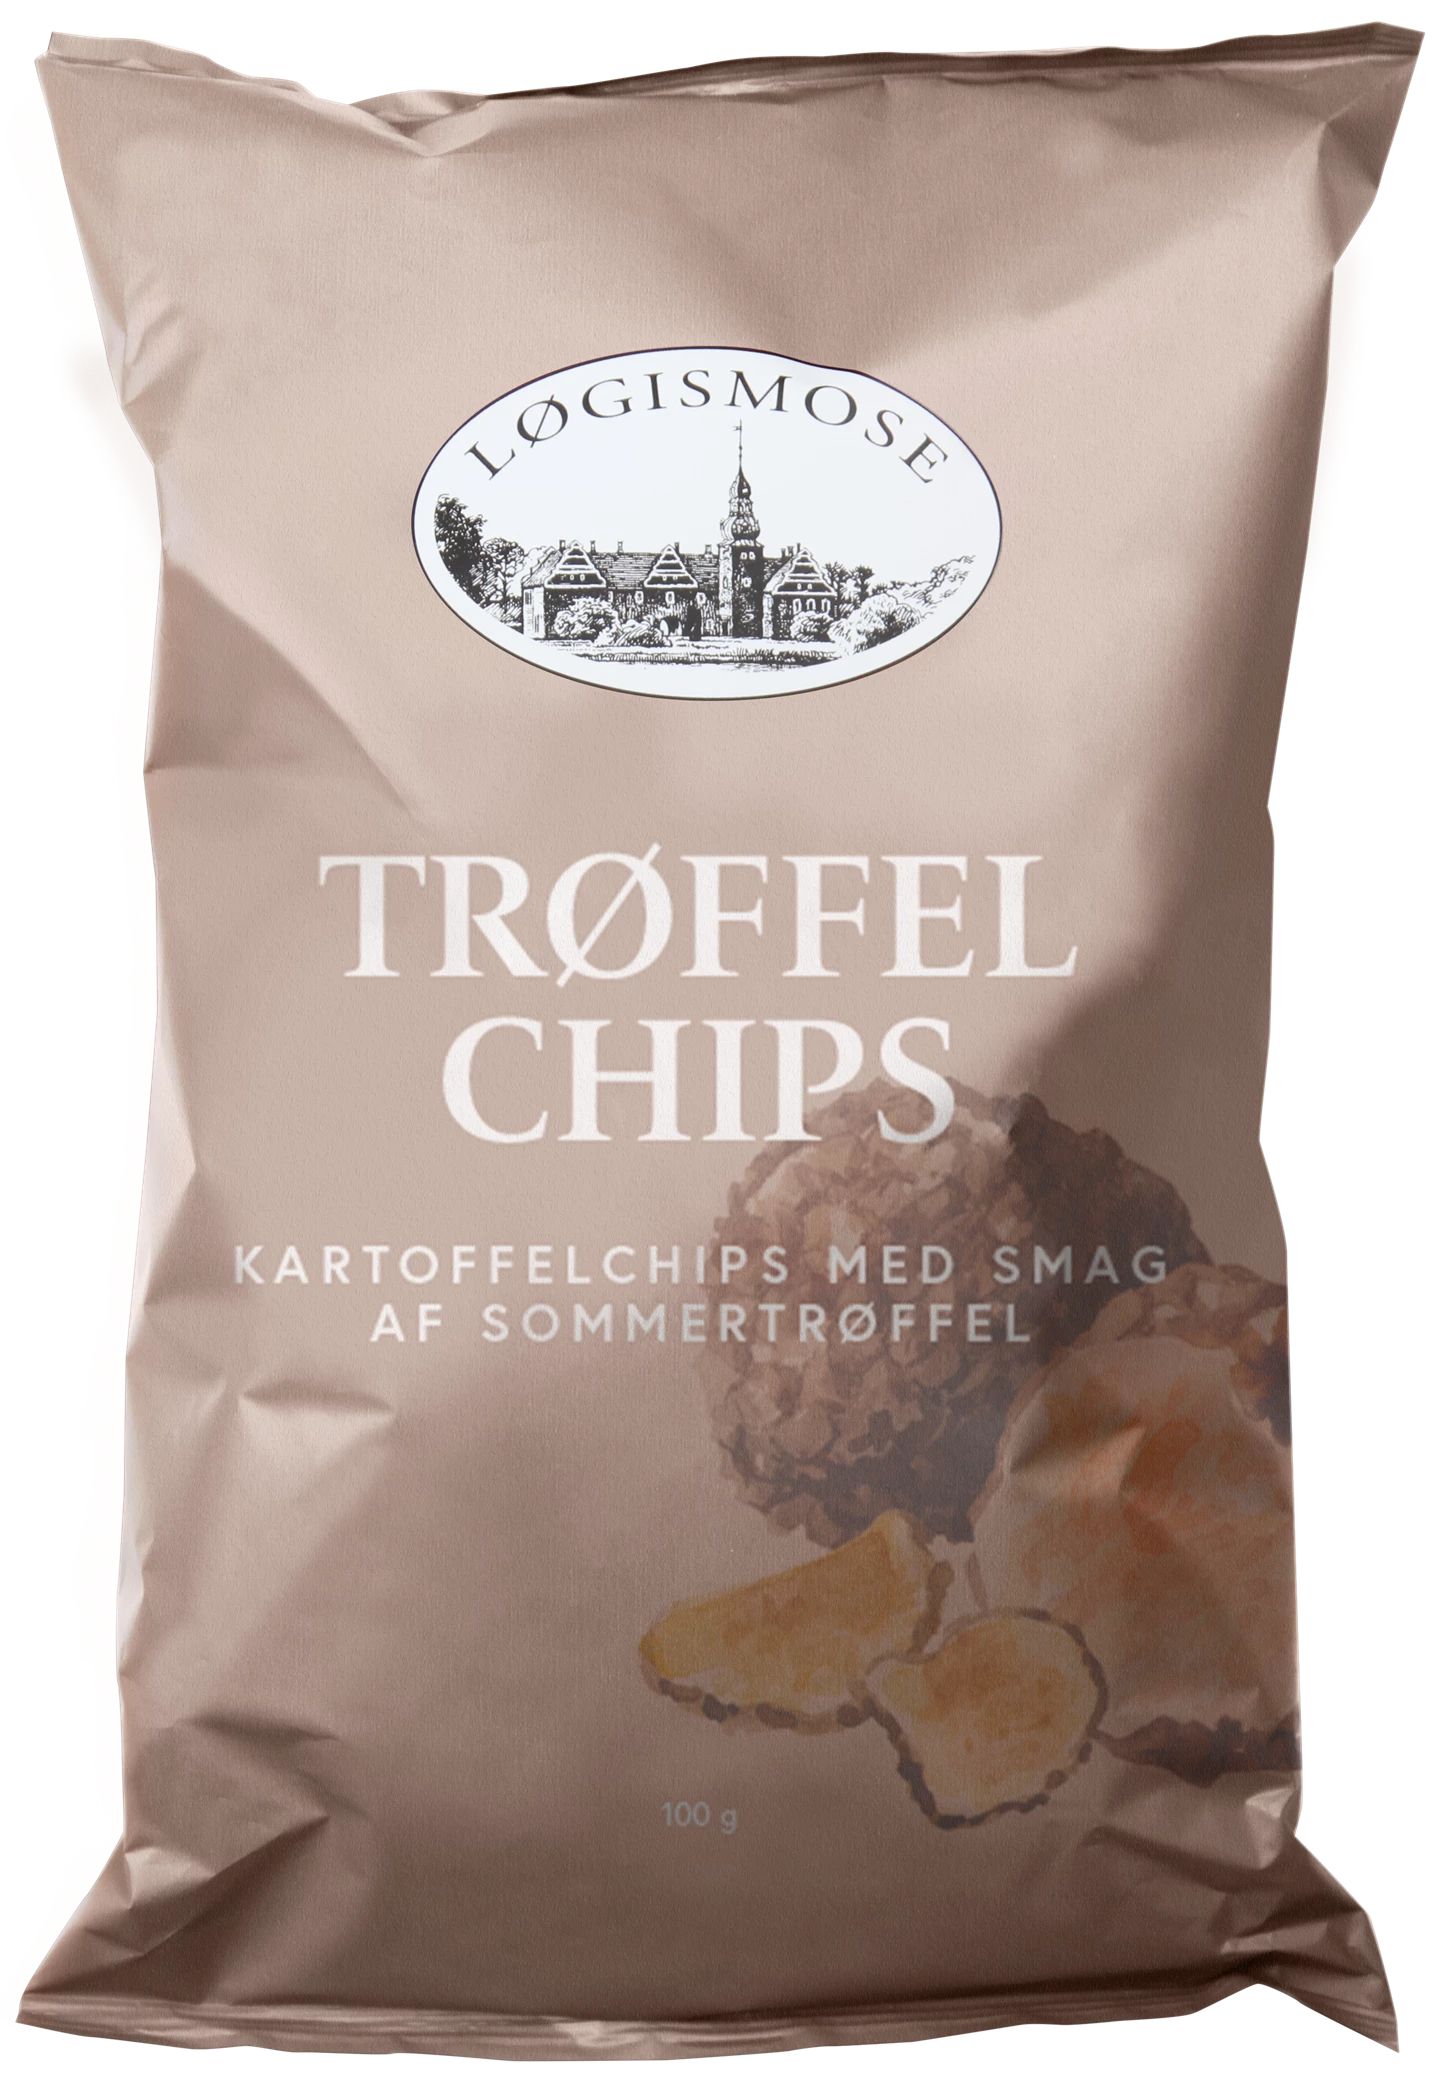 217447_loegismose_troeffel_chips